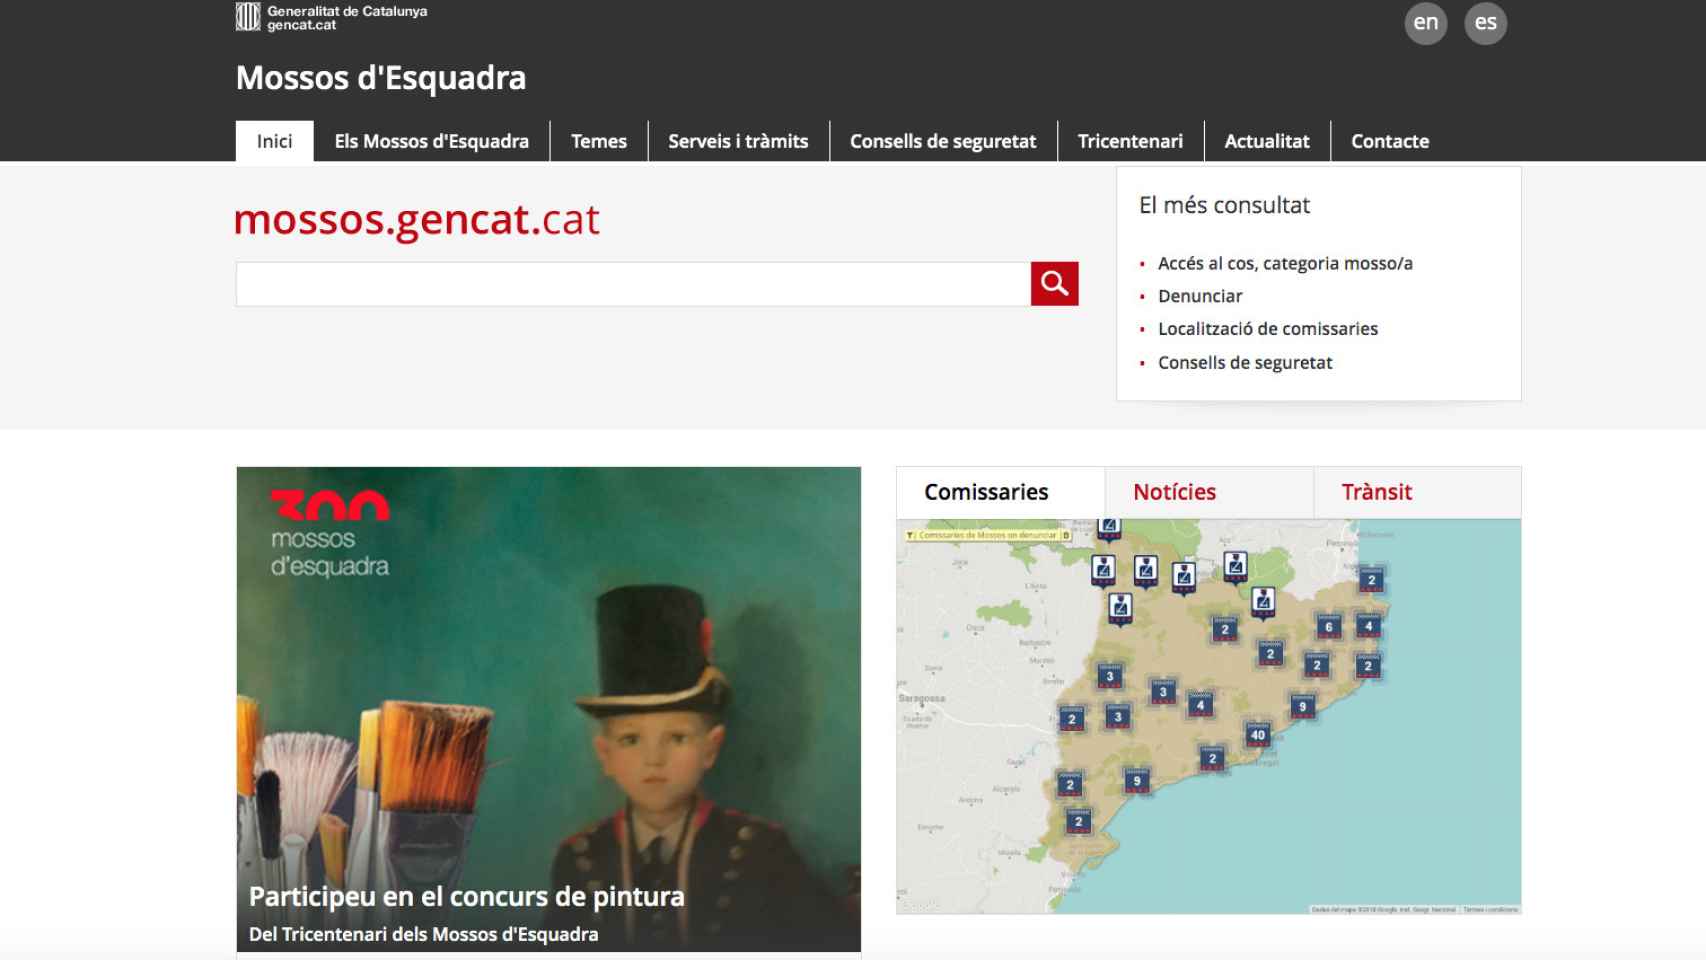 Página web de los Mossos d'Esquadra / GENCAT